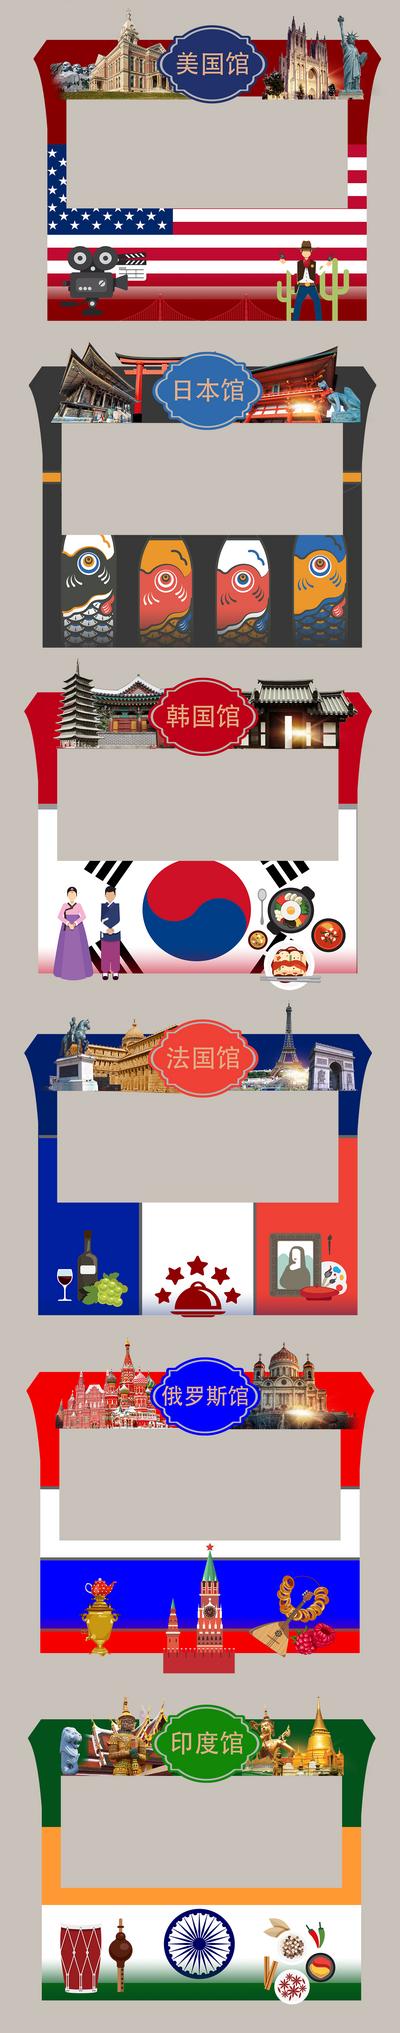 南门网 广告展板 背景板 美食节 国家馆 异形 